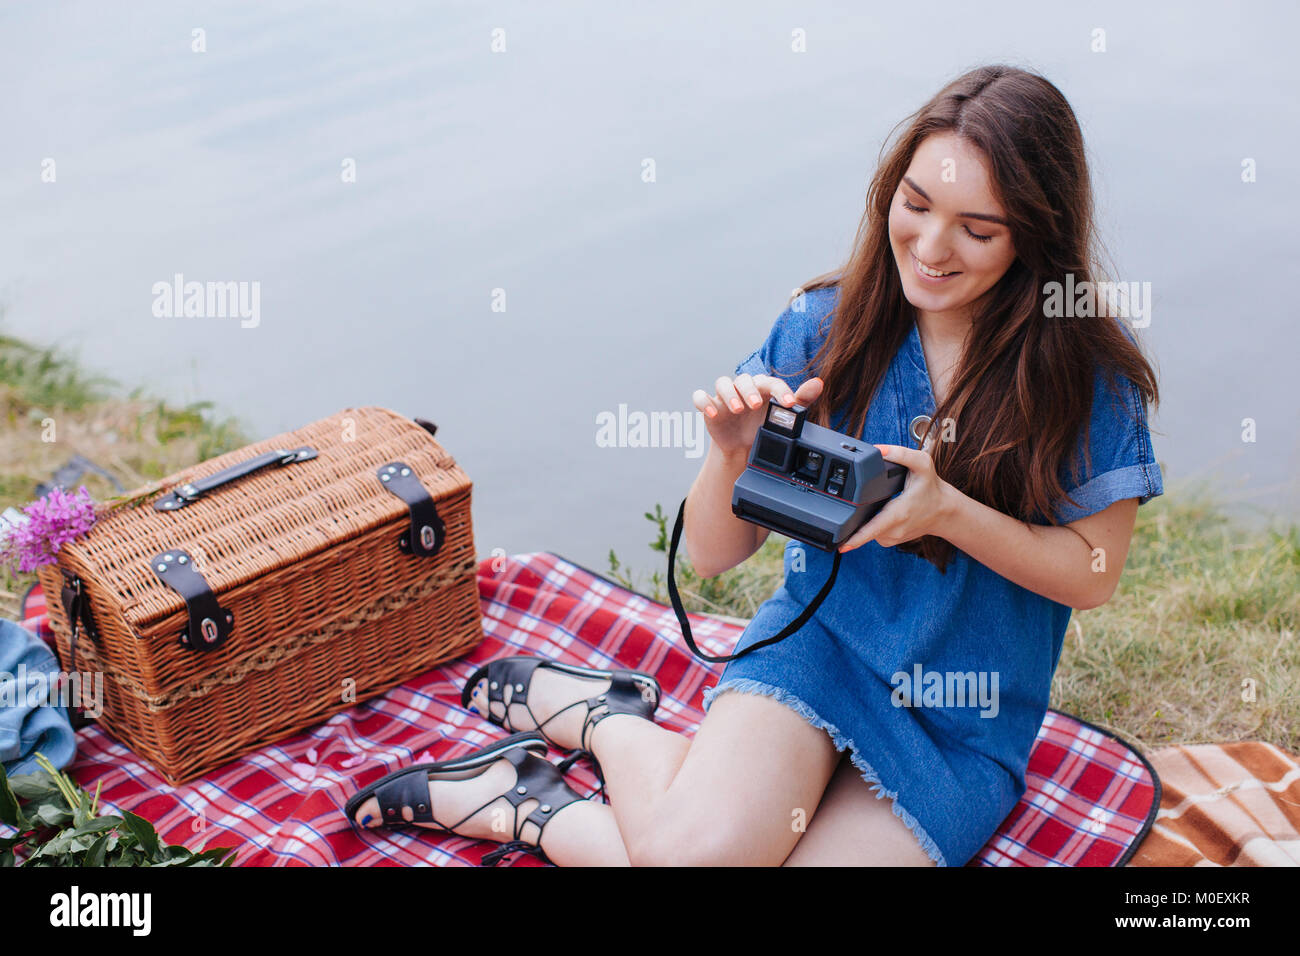 Femme assise sur une couverture de pique-nique tenant un appareil photo instantané vintage Banque D'Images